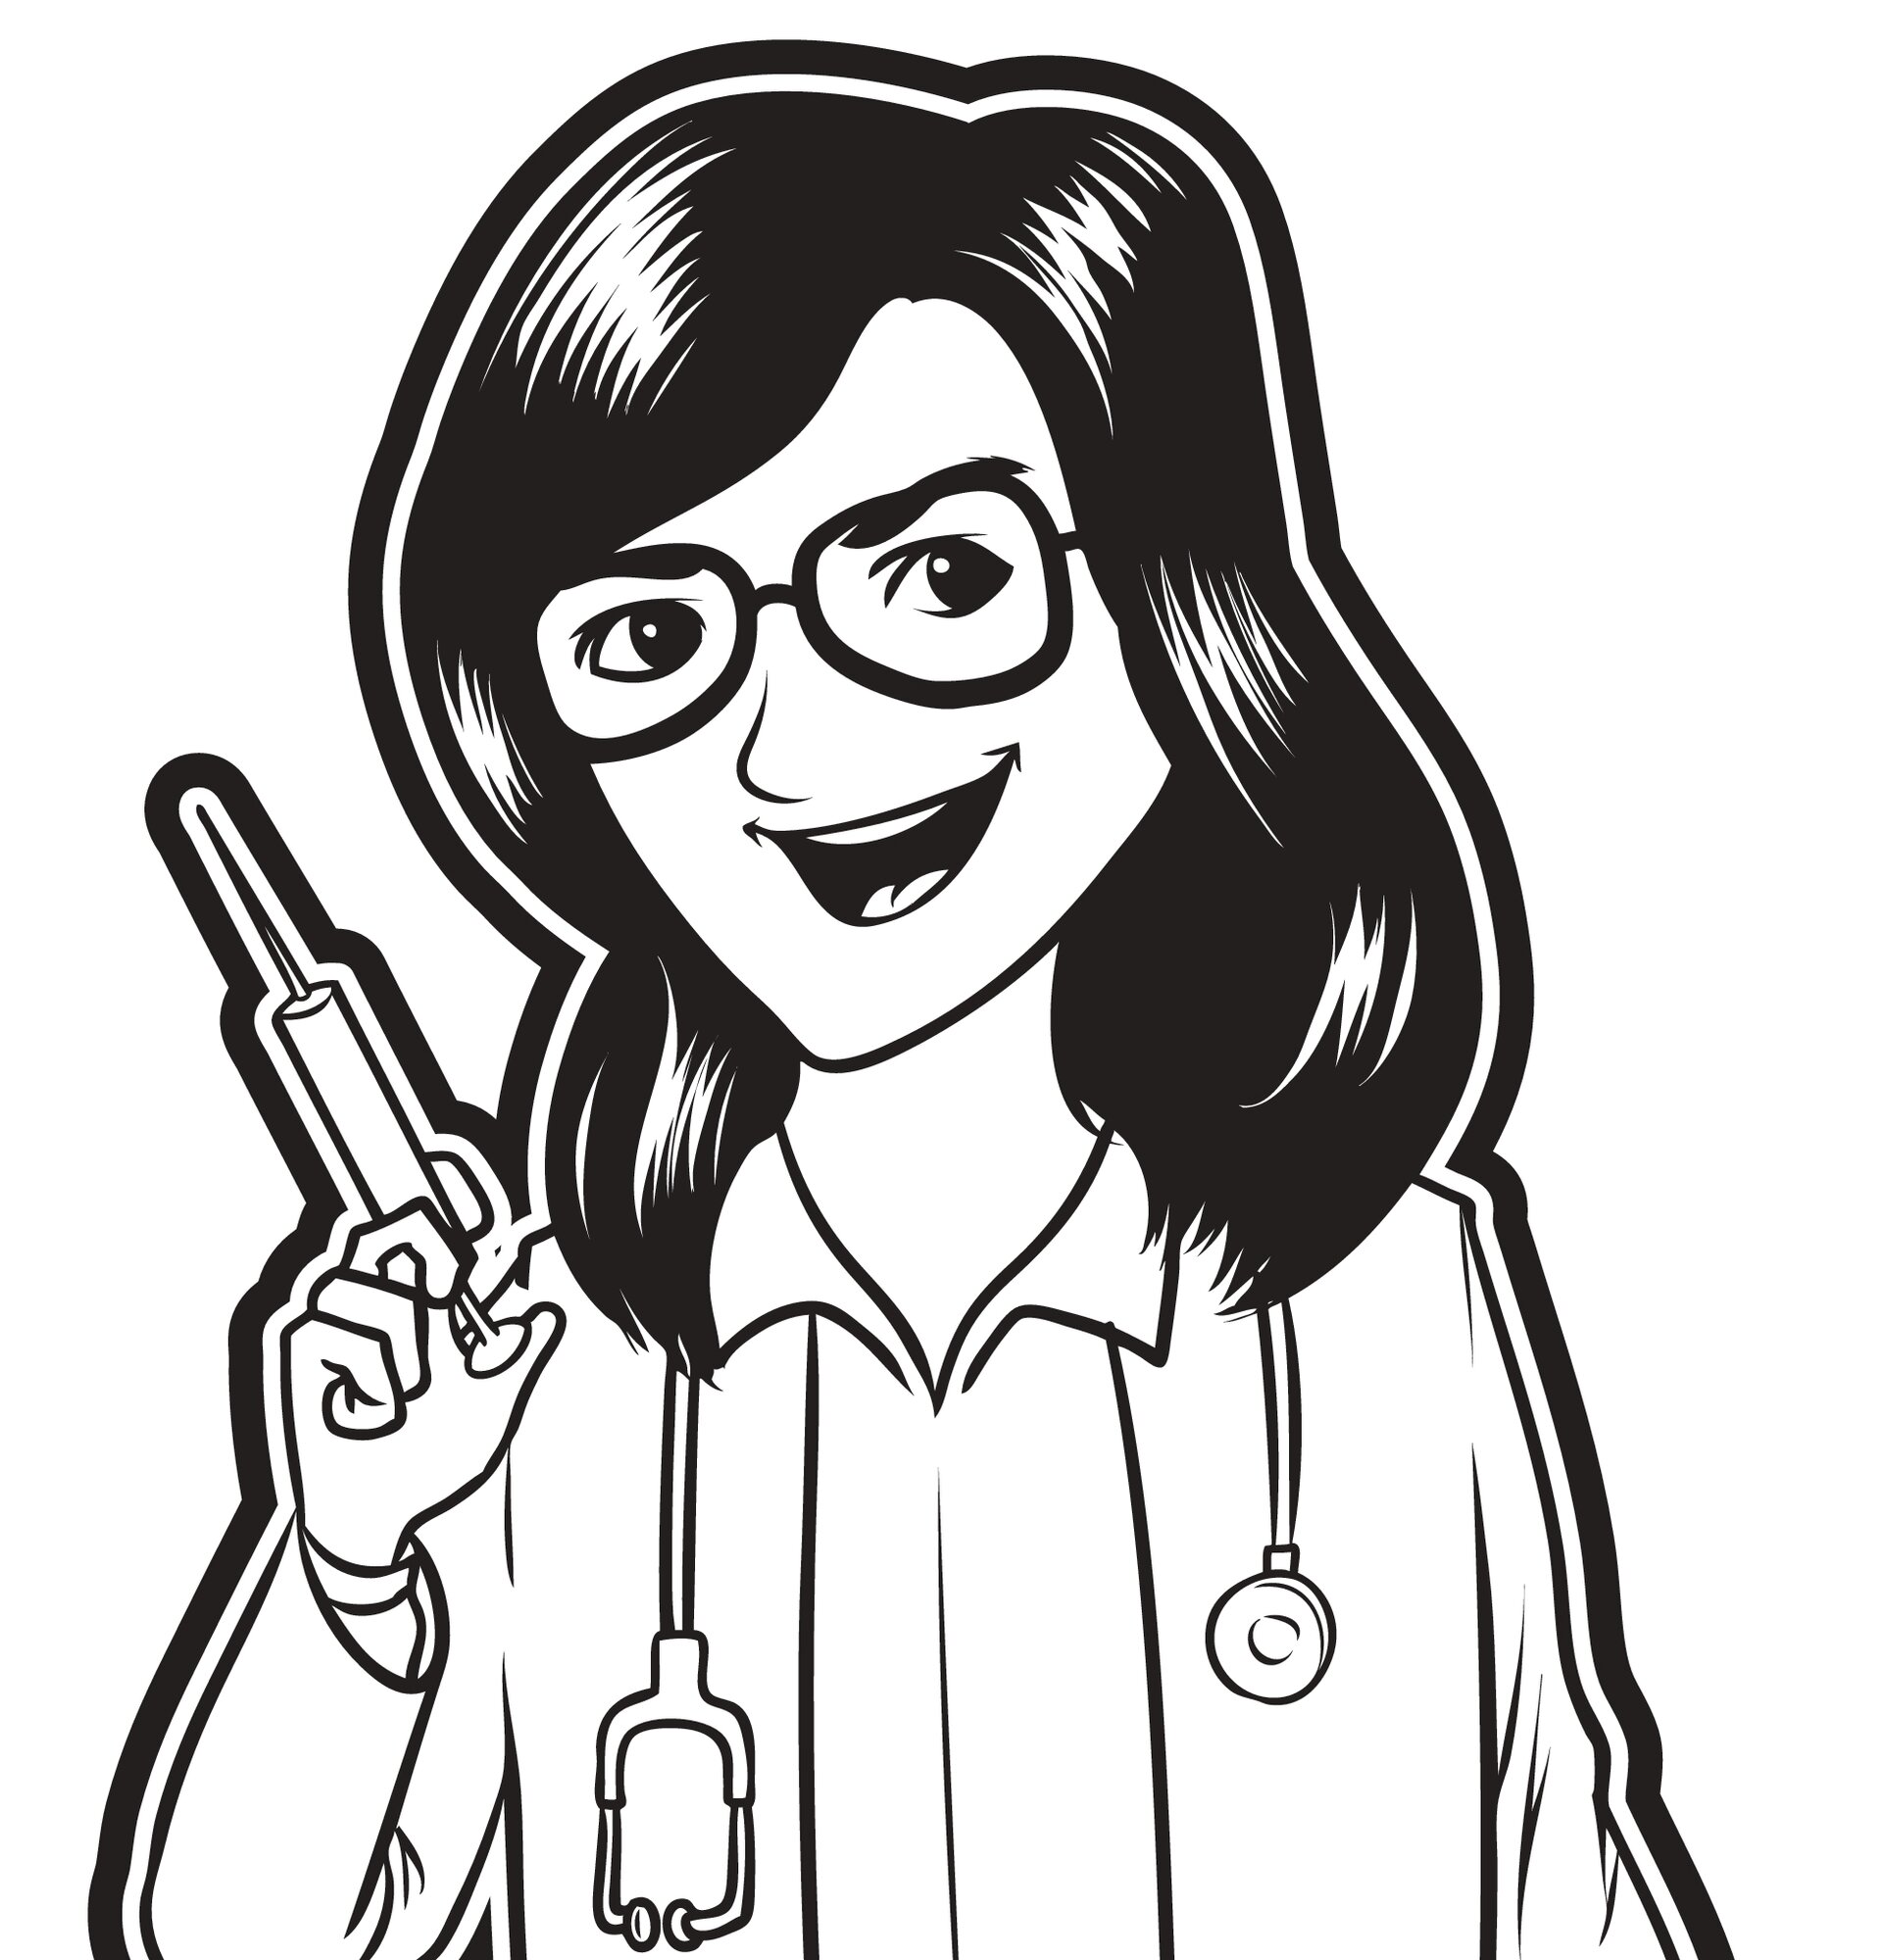 Illustrasjonen viser en sykepleier som smiler offensivt og står klar med en sprøyte.